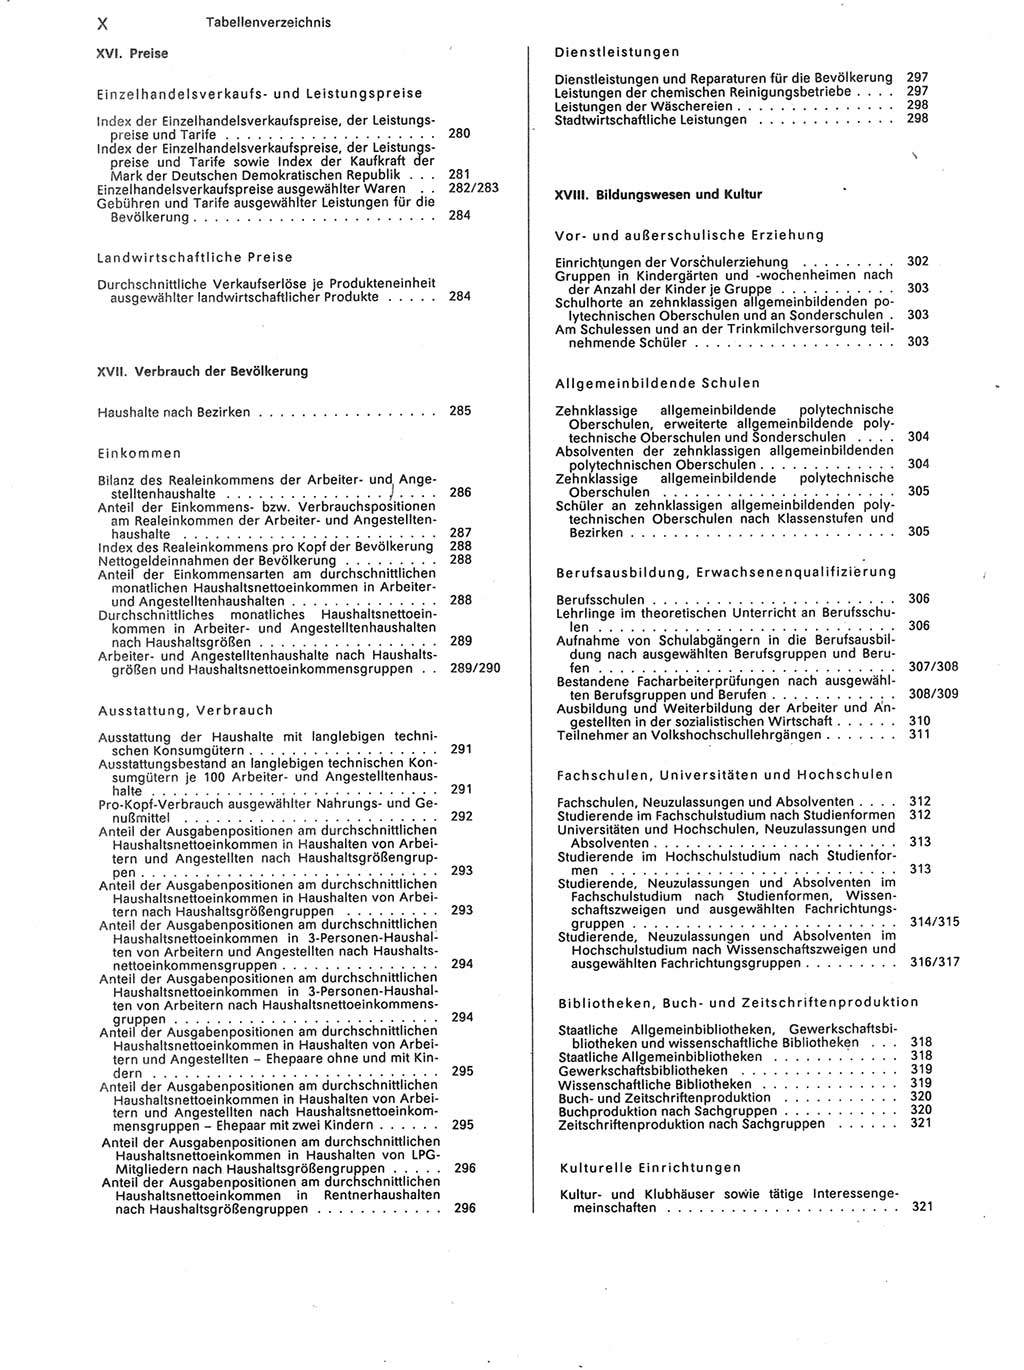 Statistisches Jahrbuch der Deutschen Demokratischen Republik (DDR) 1988, Seite 10 (Stat. Jb. DDR 1988, S. 10)